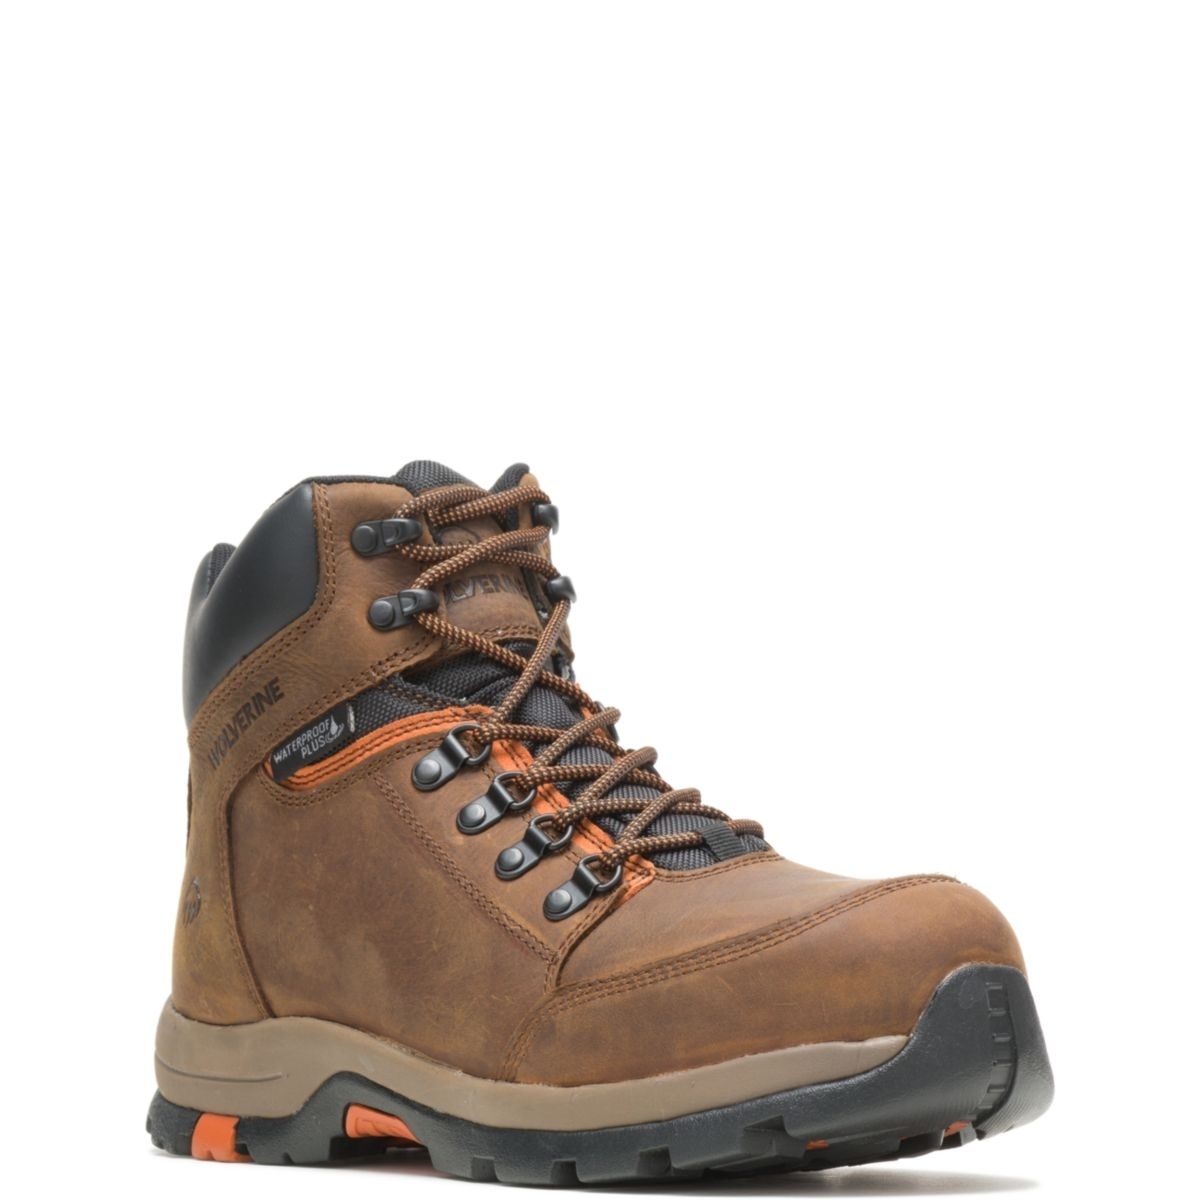 WOLVERINE Men's Grayson Steel Toe Waterproof Work Boot Brown - W211043 BROWN - BROWN, 10